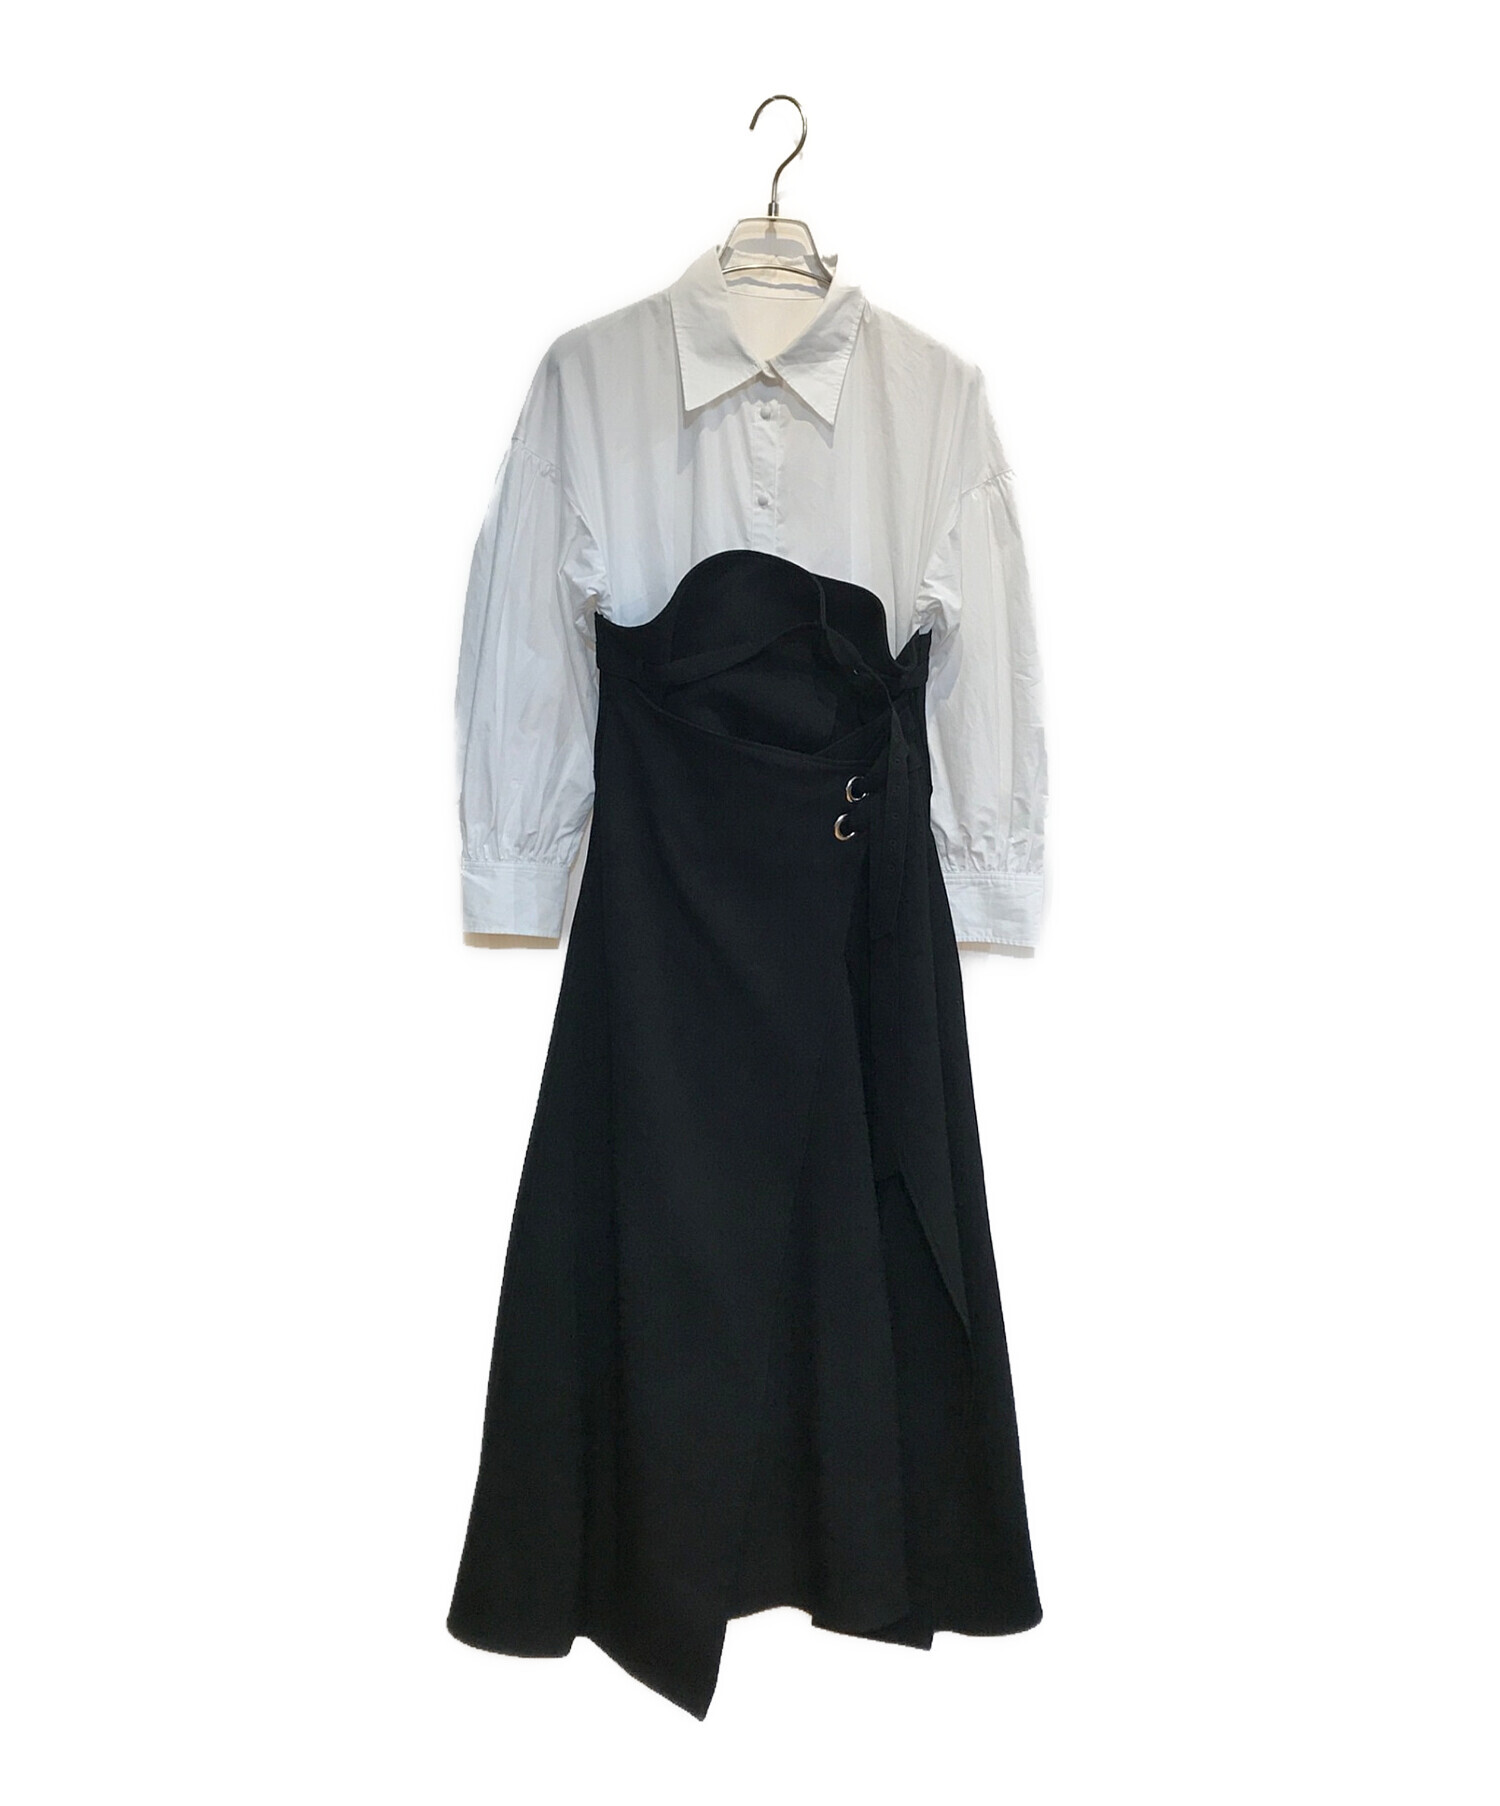 Ameri (アメリ) MILLEFEUILLE SHIRT DRESS/ミルフィーユ シャツ ドレス ホワイト×ブラック サイズ:S